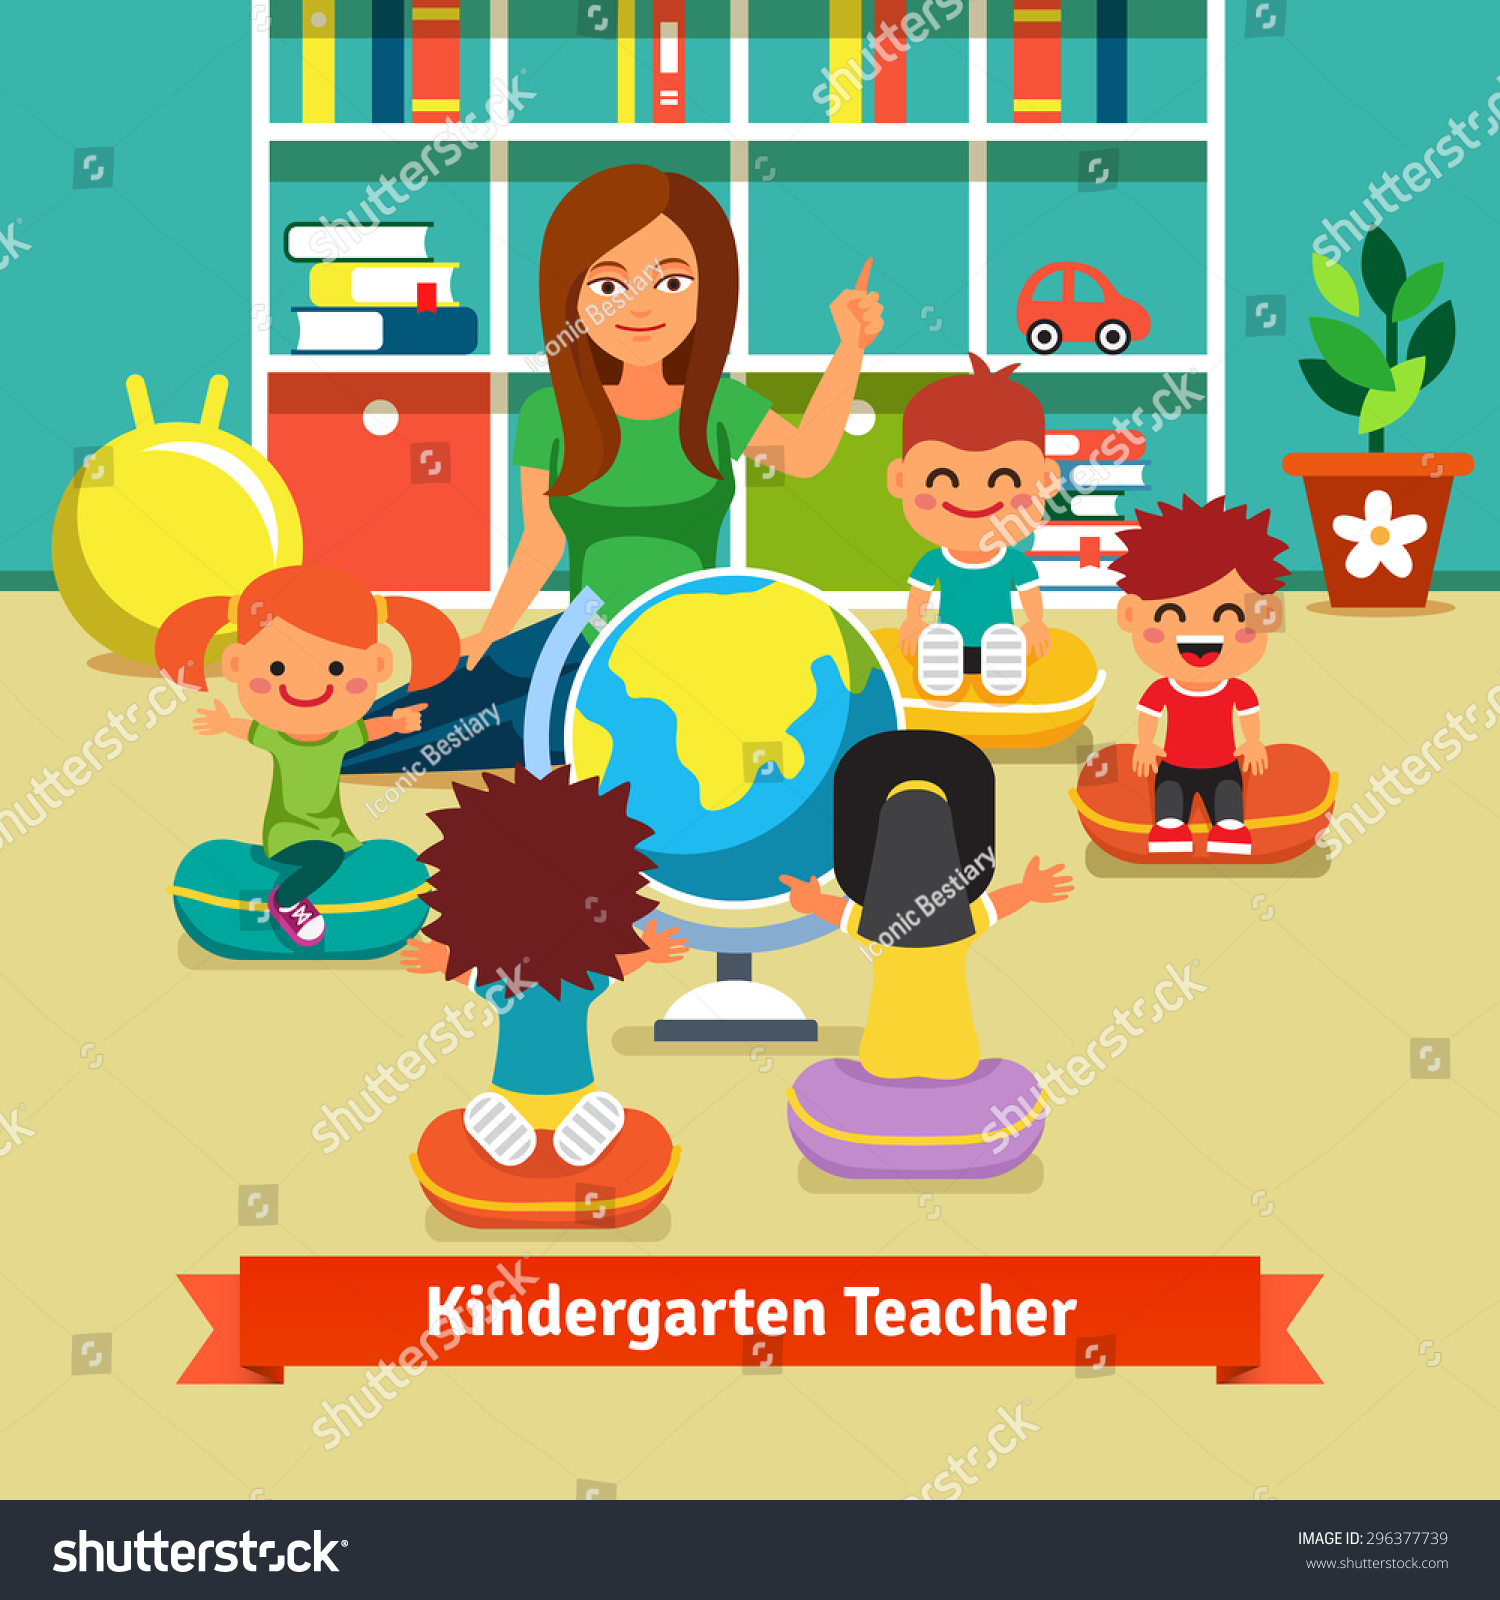 clipart of kindergarten classroom - photo #36